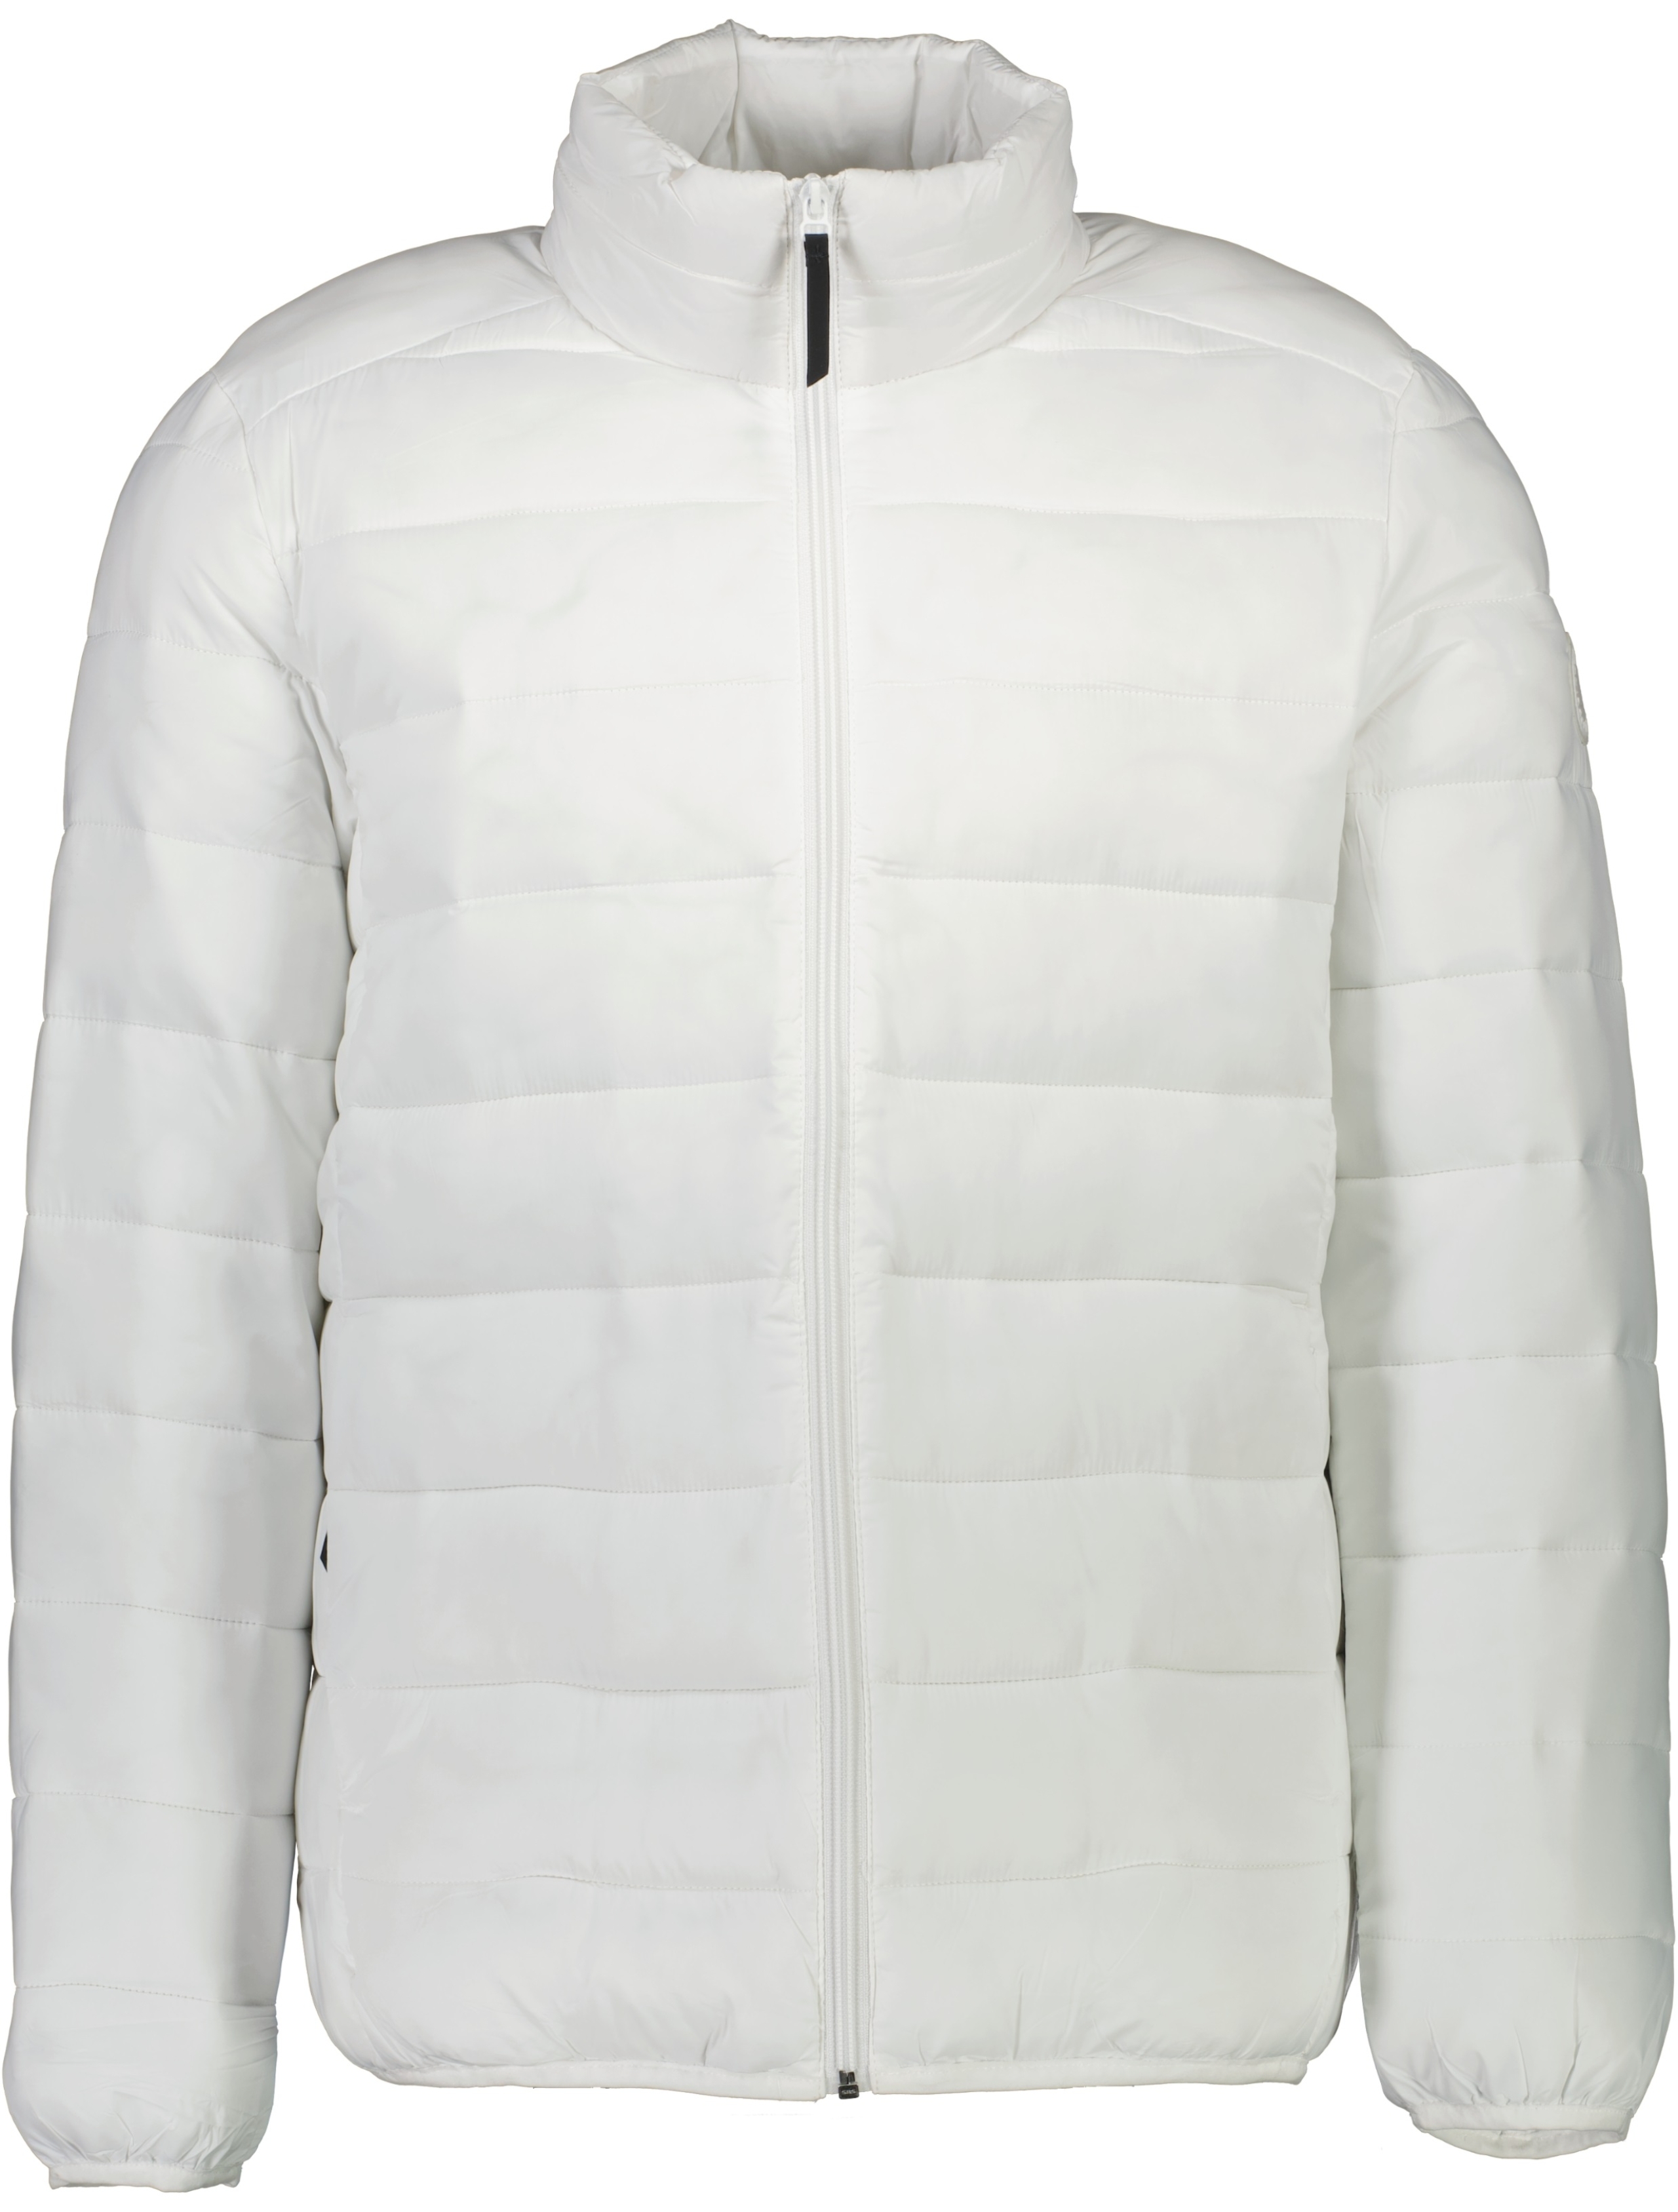 Lindbergh Padded jacket white / off white